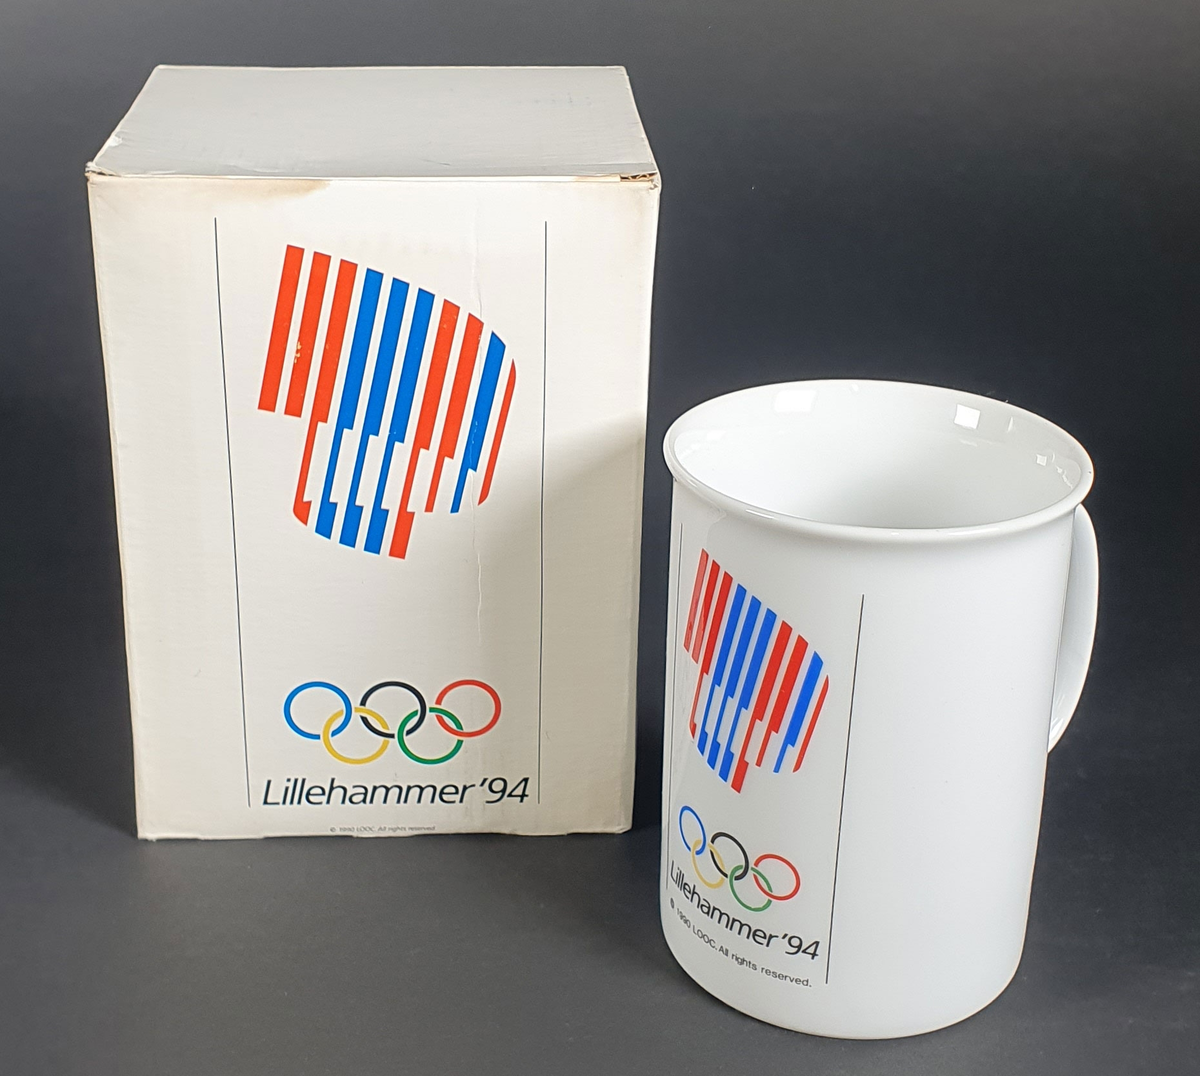 Hvitt kopp med hank, og med emblem for Lillehammer '94 i rødt, hvitt og blått. Koppen ligger i original emballasje.
